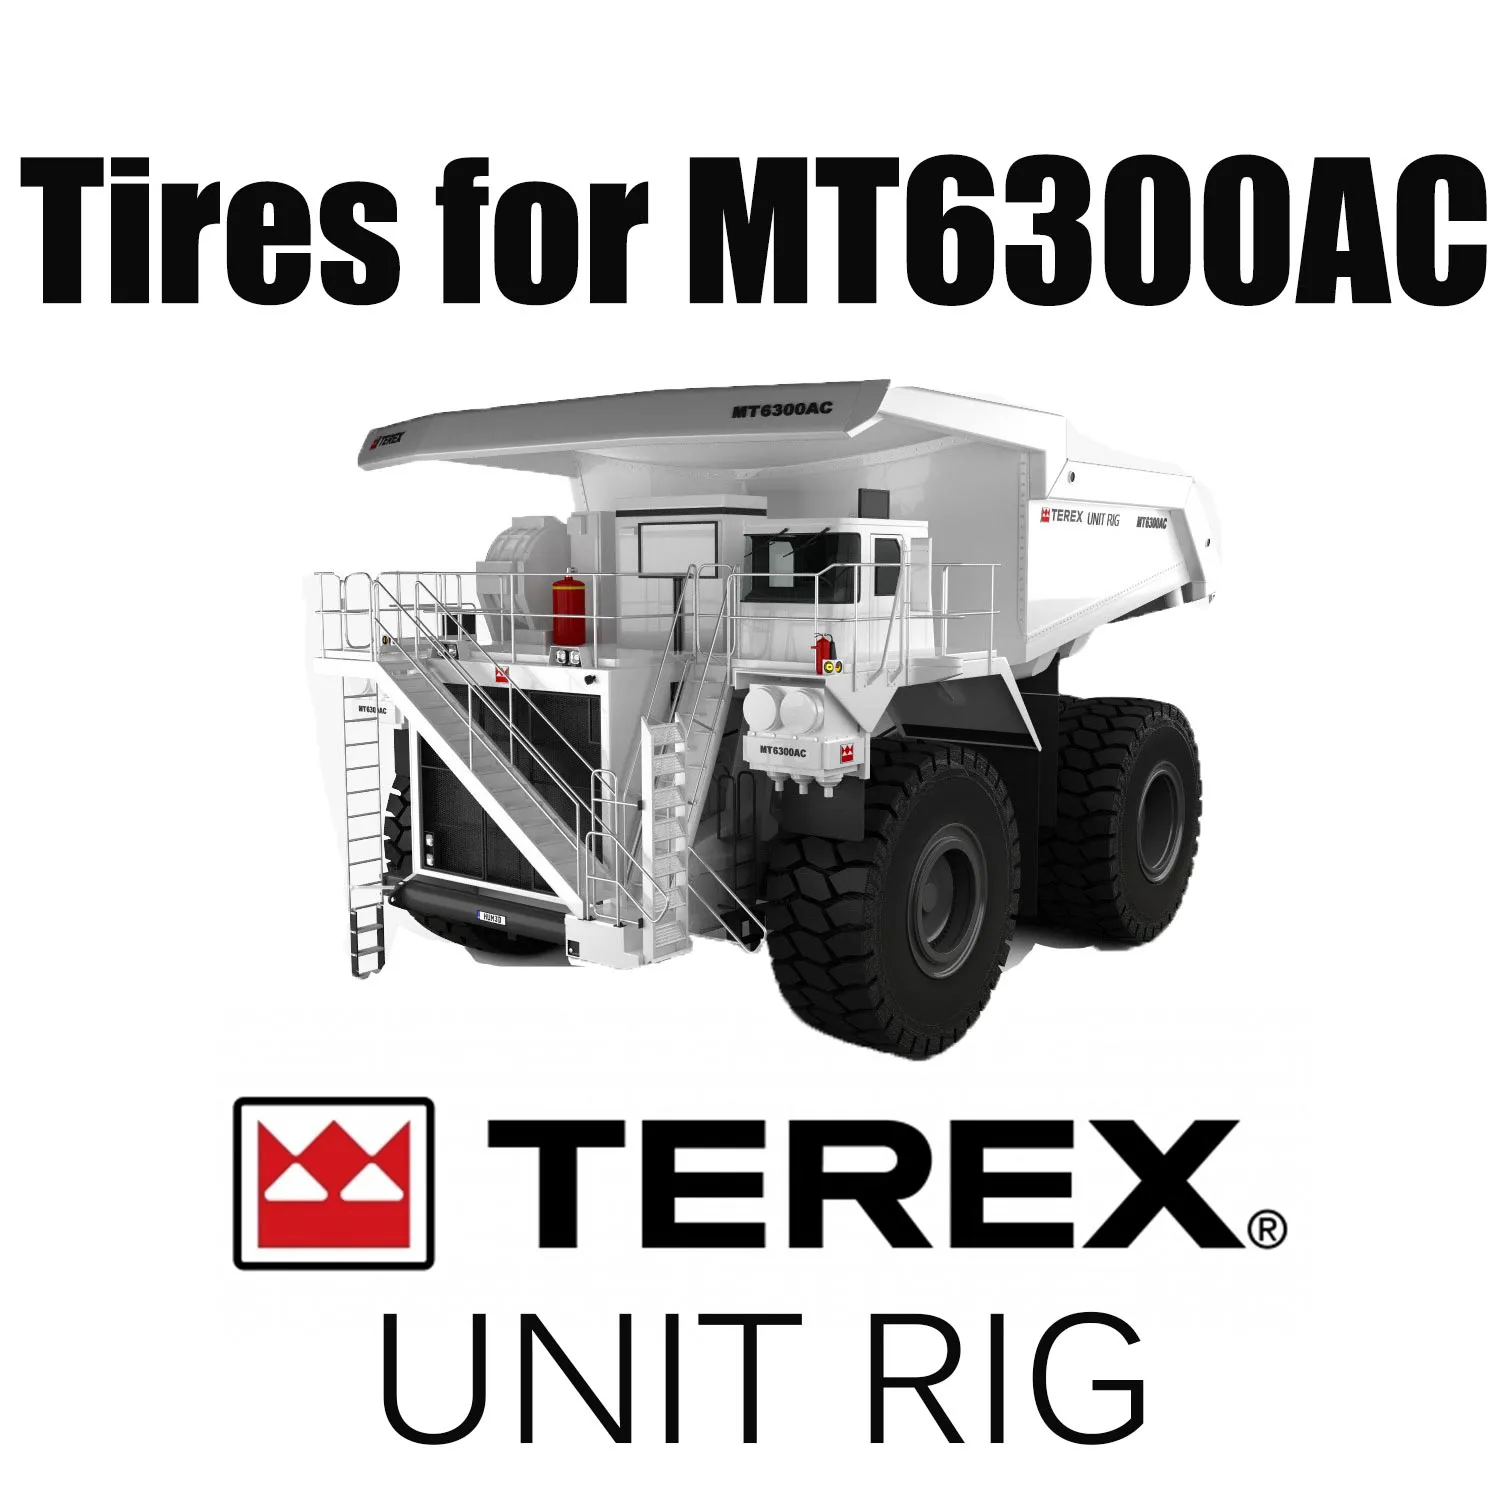 UNIT RIG MT6300AC dumptrucks uitgerust met gigantische 59/80R63 off-the-road banden